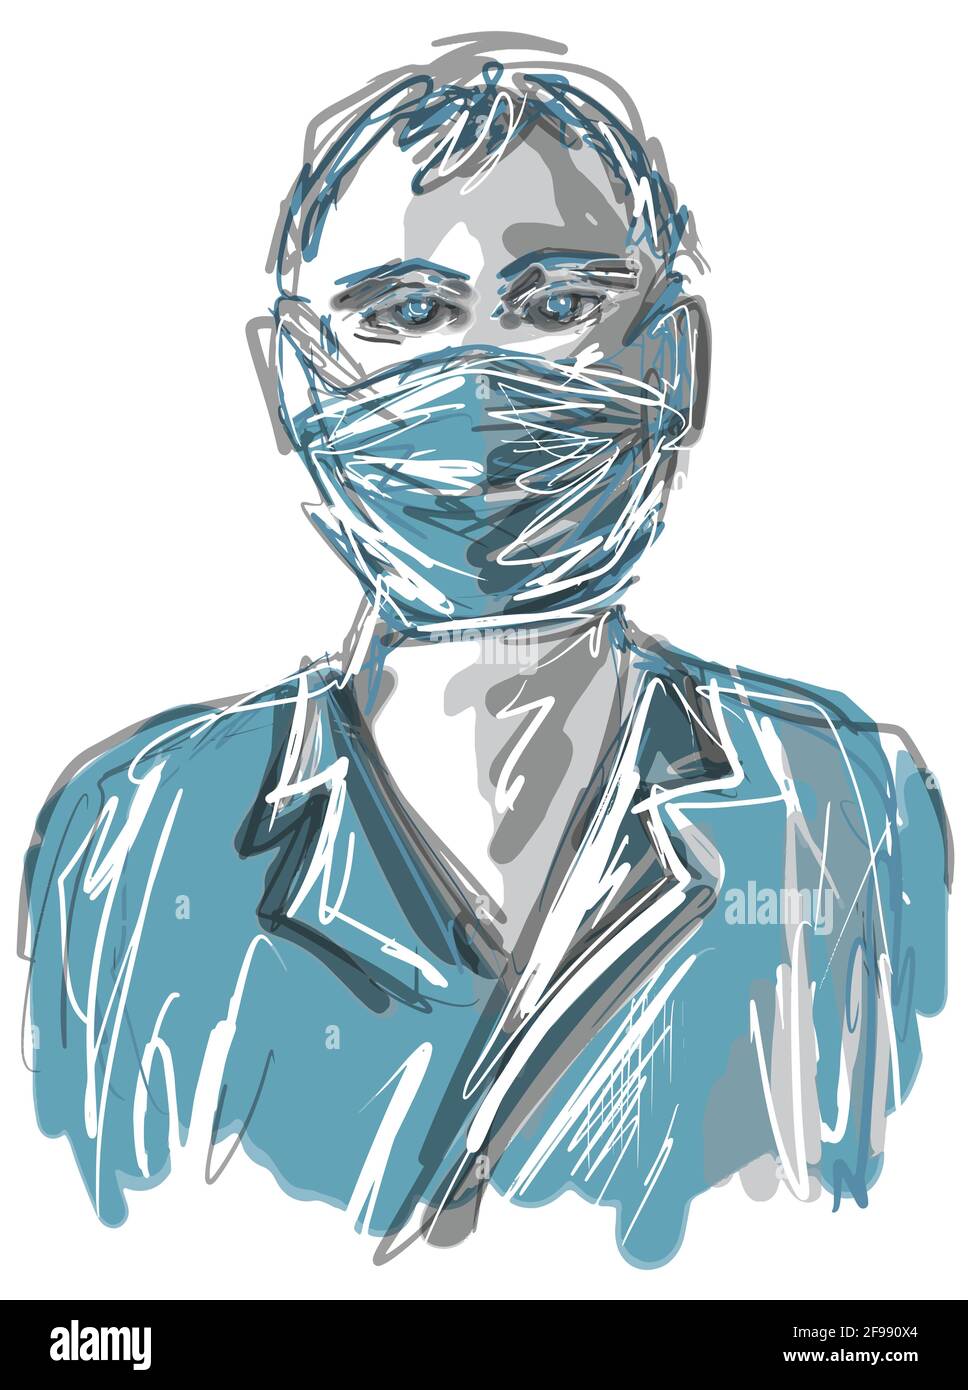 Schizzo ritratto disegnato a mano di un uomo in maschera eps10 illustrazione vettoriale isolata su sfondo bianco. Illustrazione Vettoriale